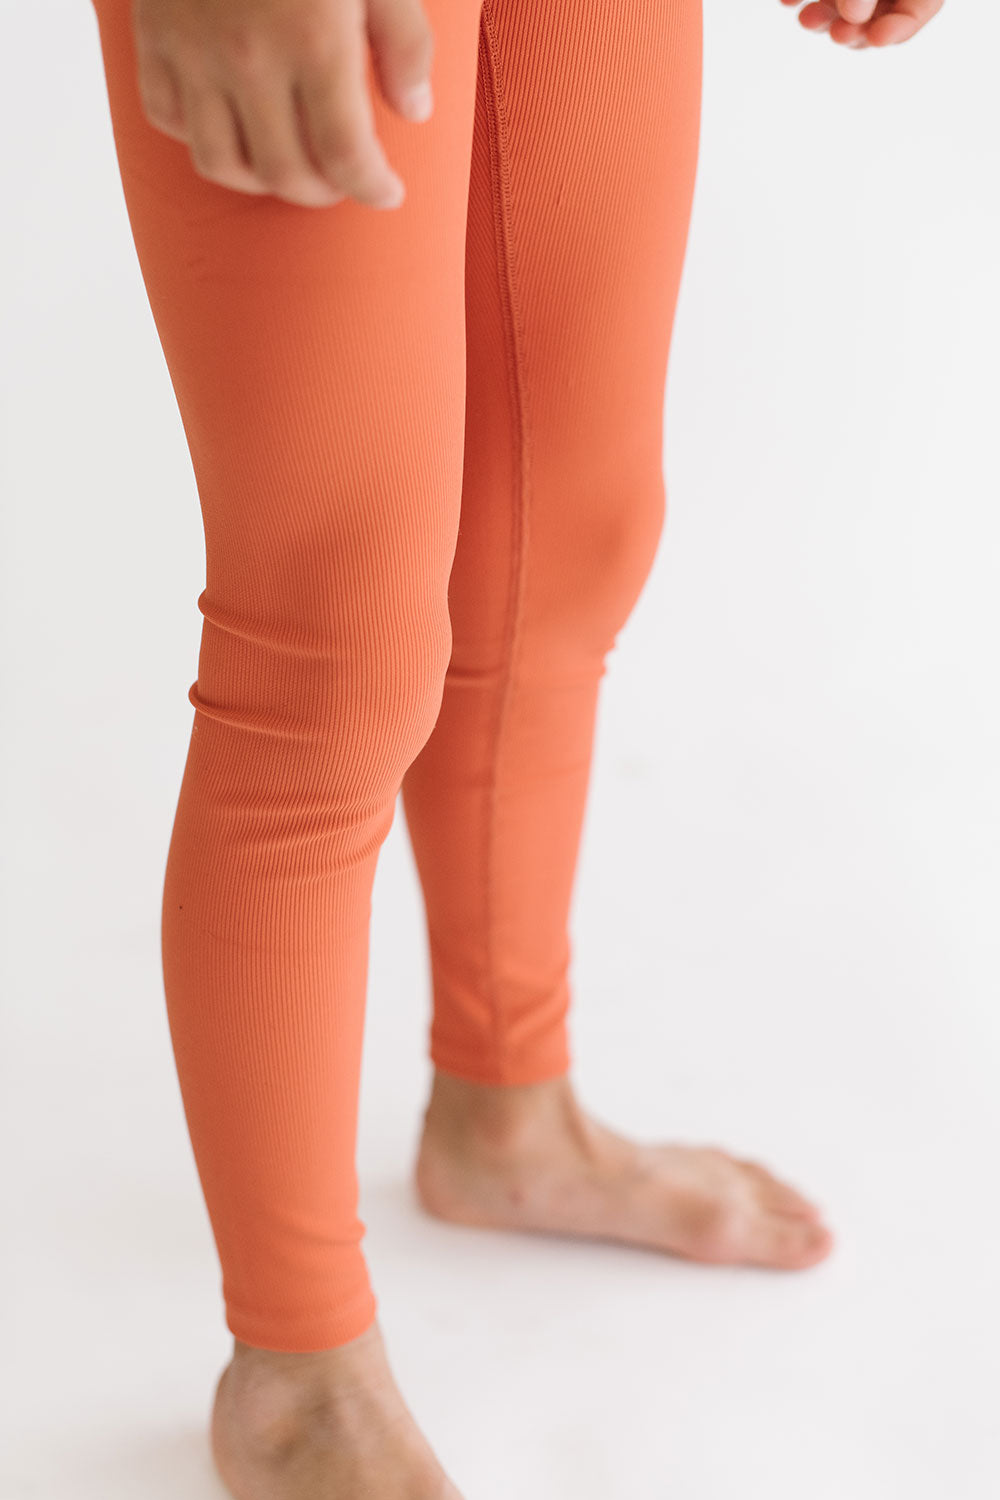 Buy The Giving Movement women ribbed pull on leggings tangerine orange  Online